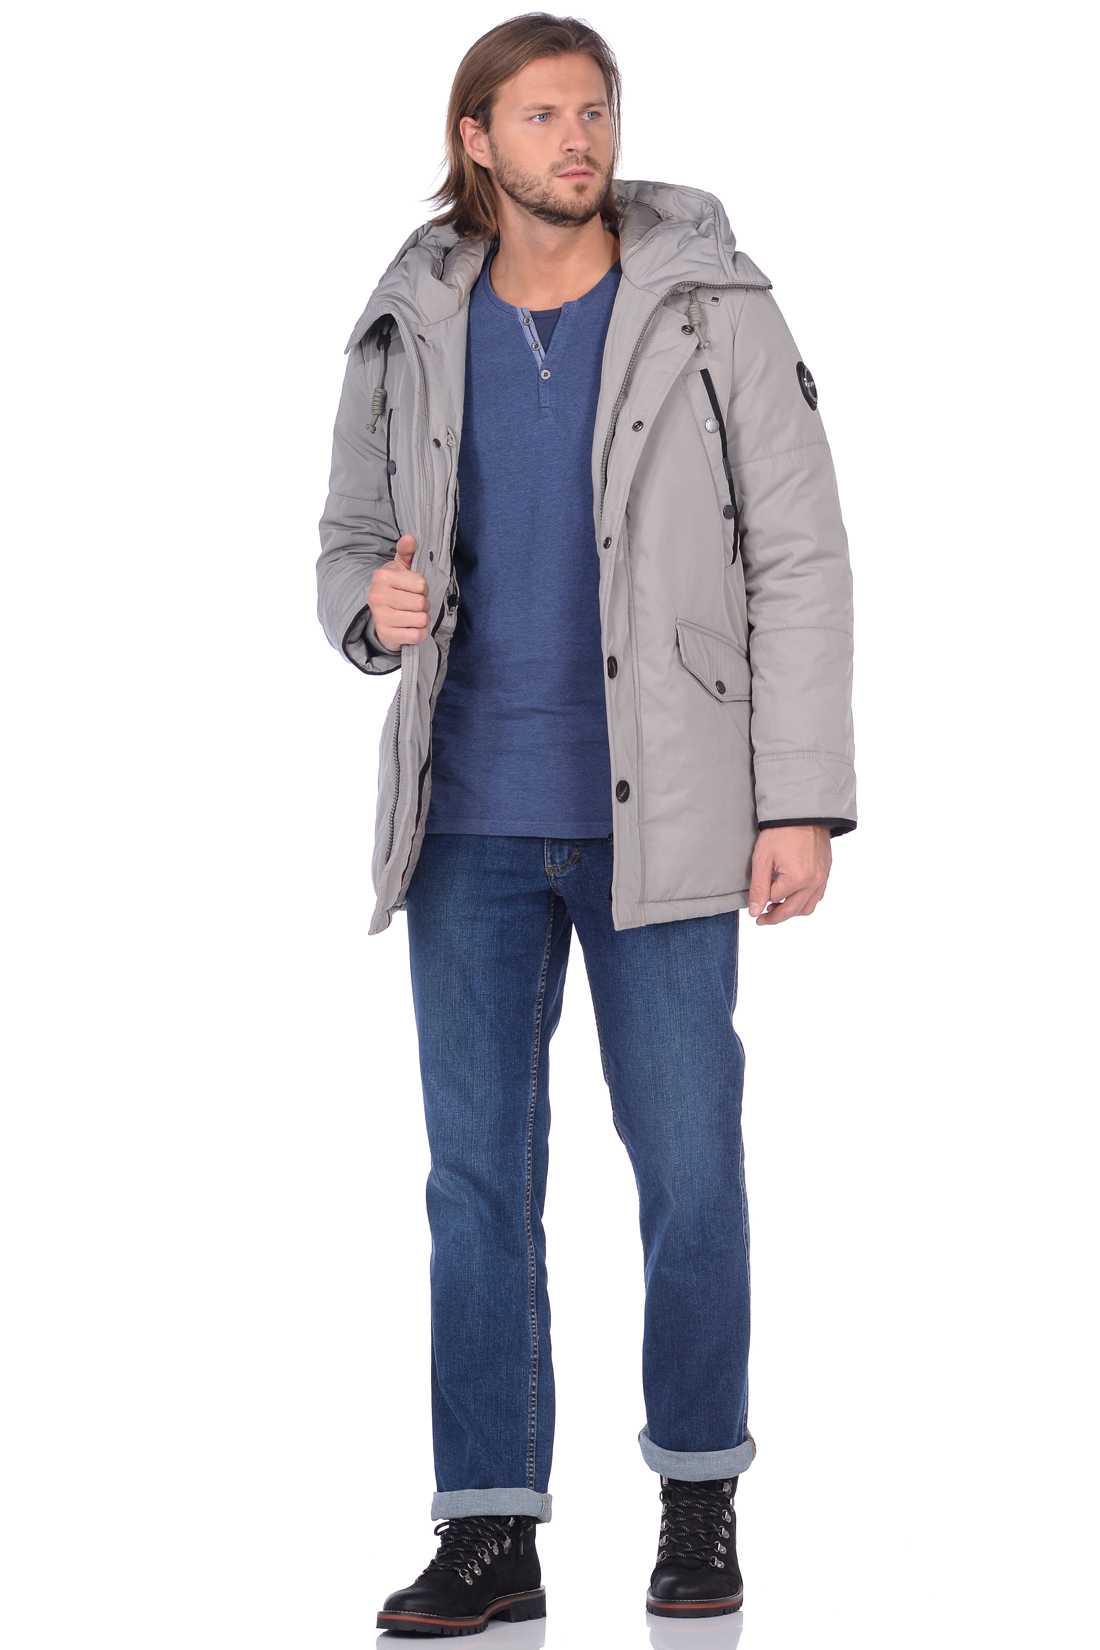 Куртка с закрытым капюшоном (арт. baon B538531), размер S, цвет серый Куртка с закрытым капюшоном (арт. baon B538531) - фото 4